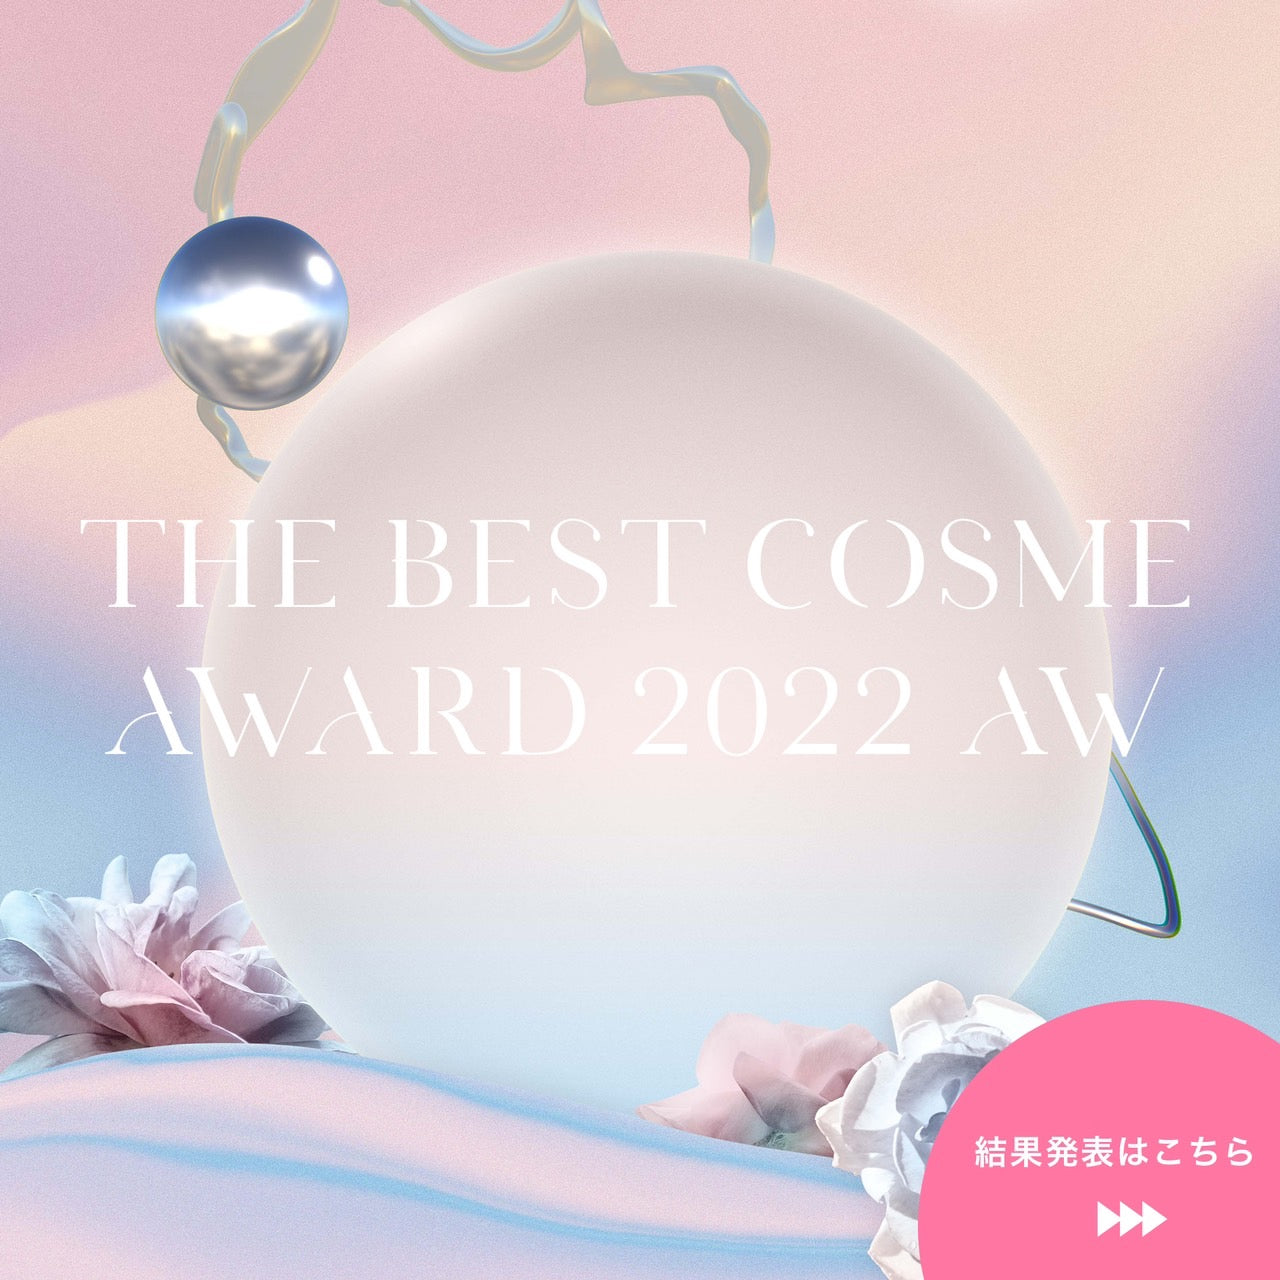 【🥂当選者発表🥂】BEST COSME AWARD 2022下半期結果発表👏🎊